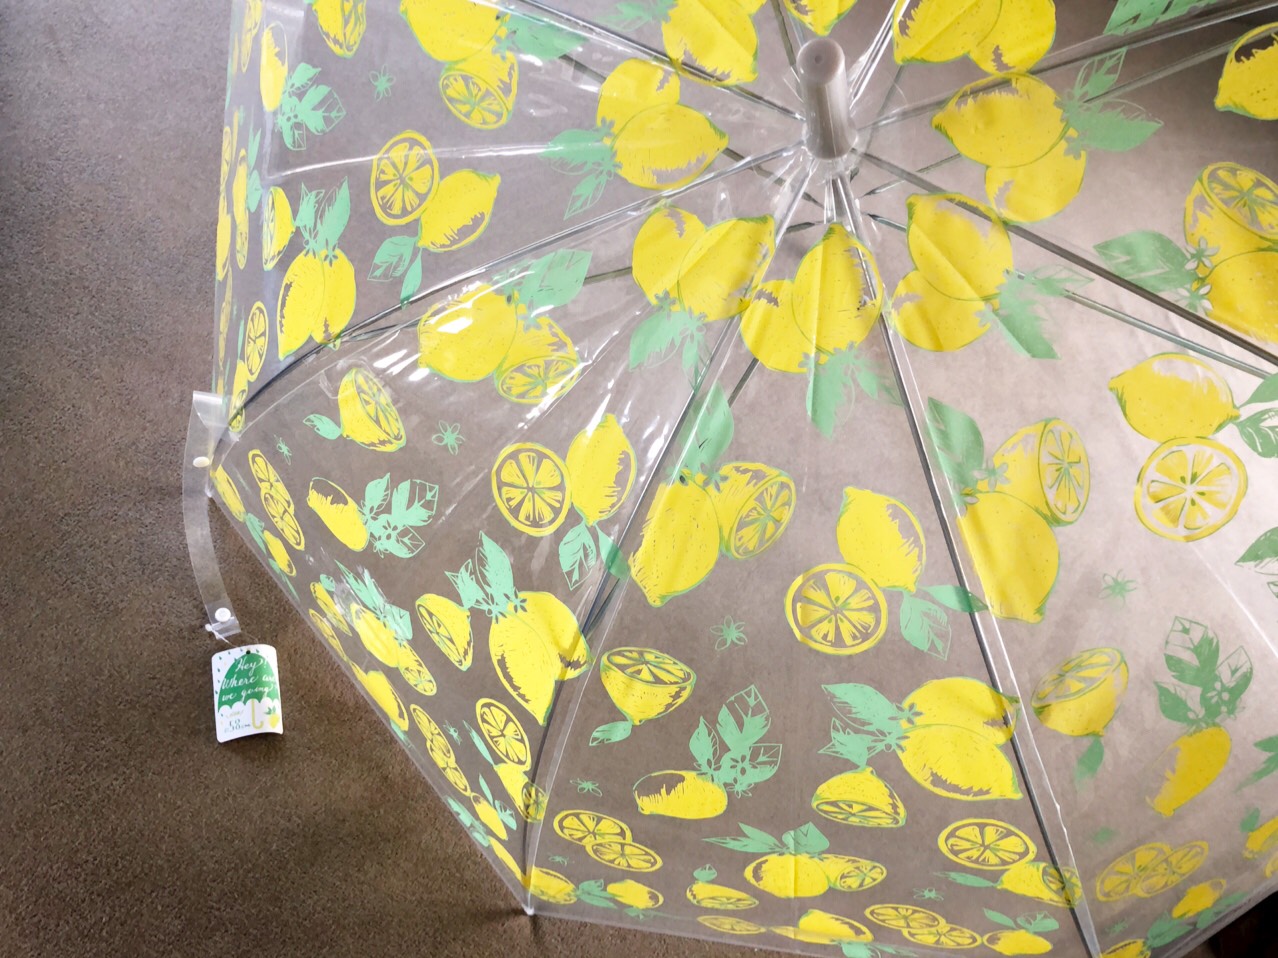 雨の日も楽しく 3coins の梅雨対策グッズが可愛くて使える ローリエプレス